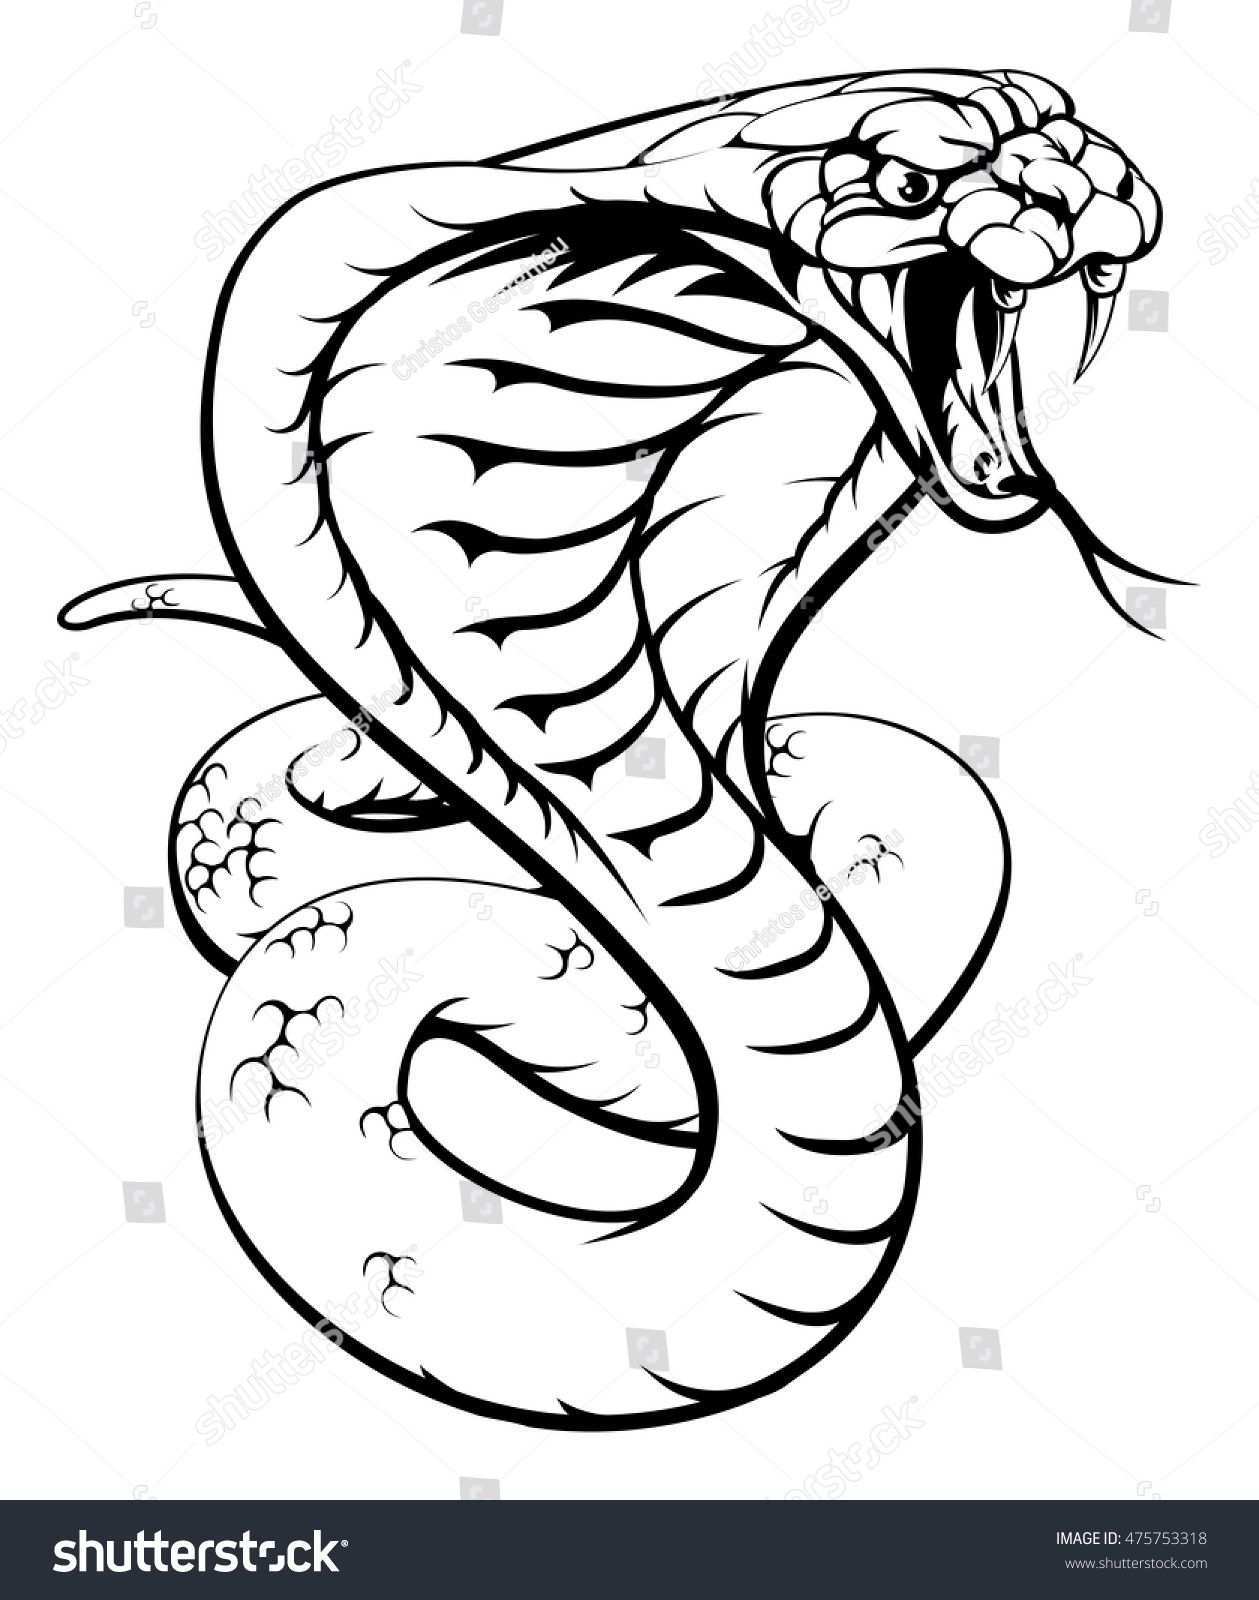 An Illustration Of A King Cobra Snake In Black And White Konigskobra Tattoo Schlange Zeichnung Schlange Kunst